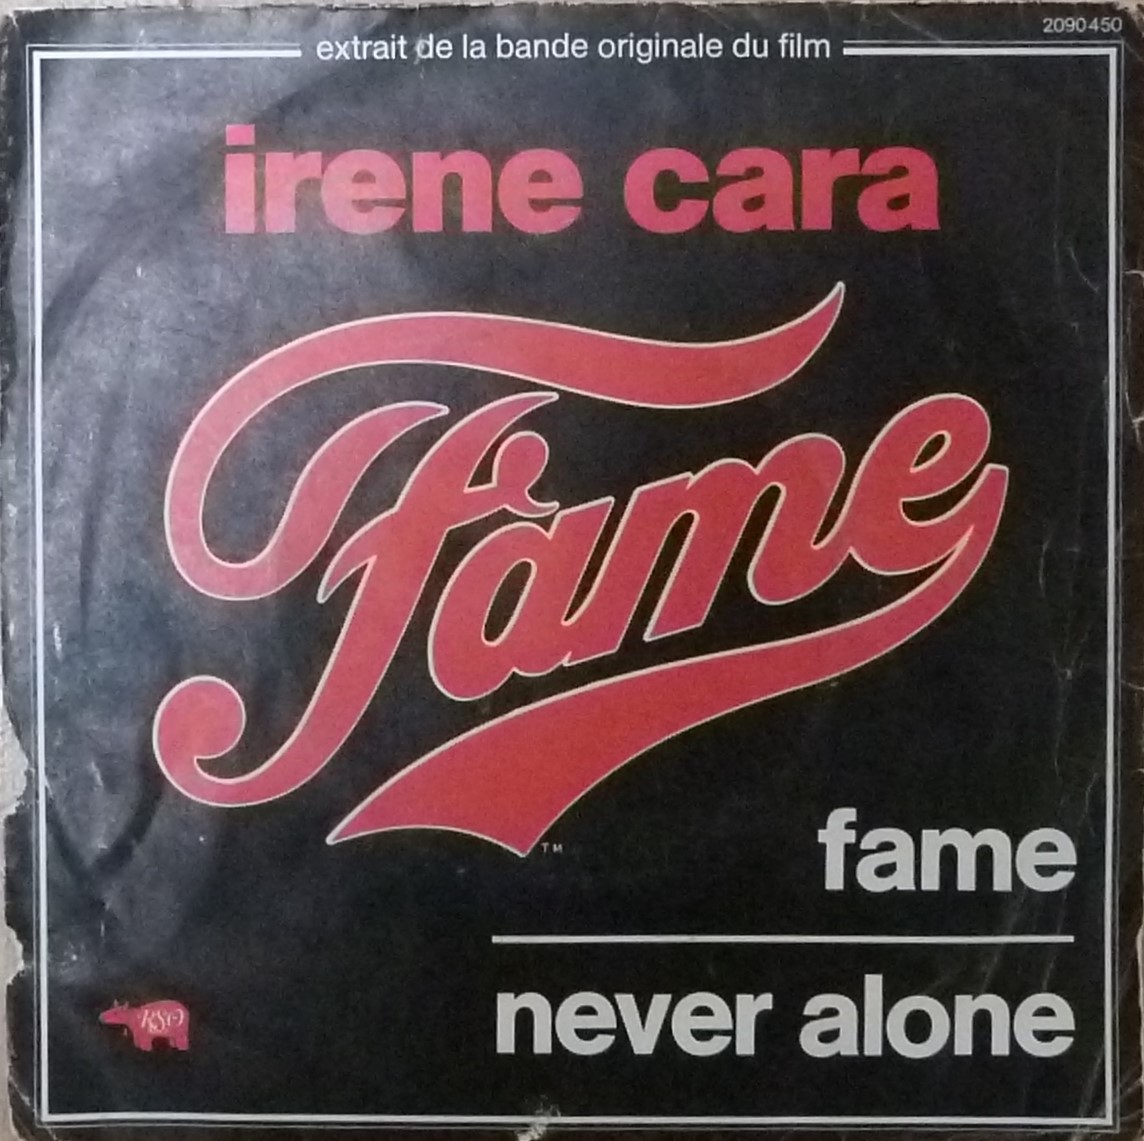 Irene Cara, Fame